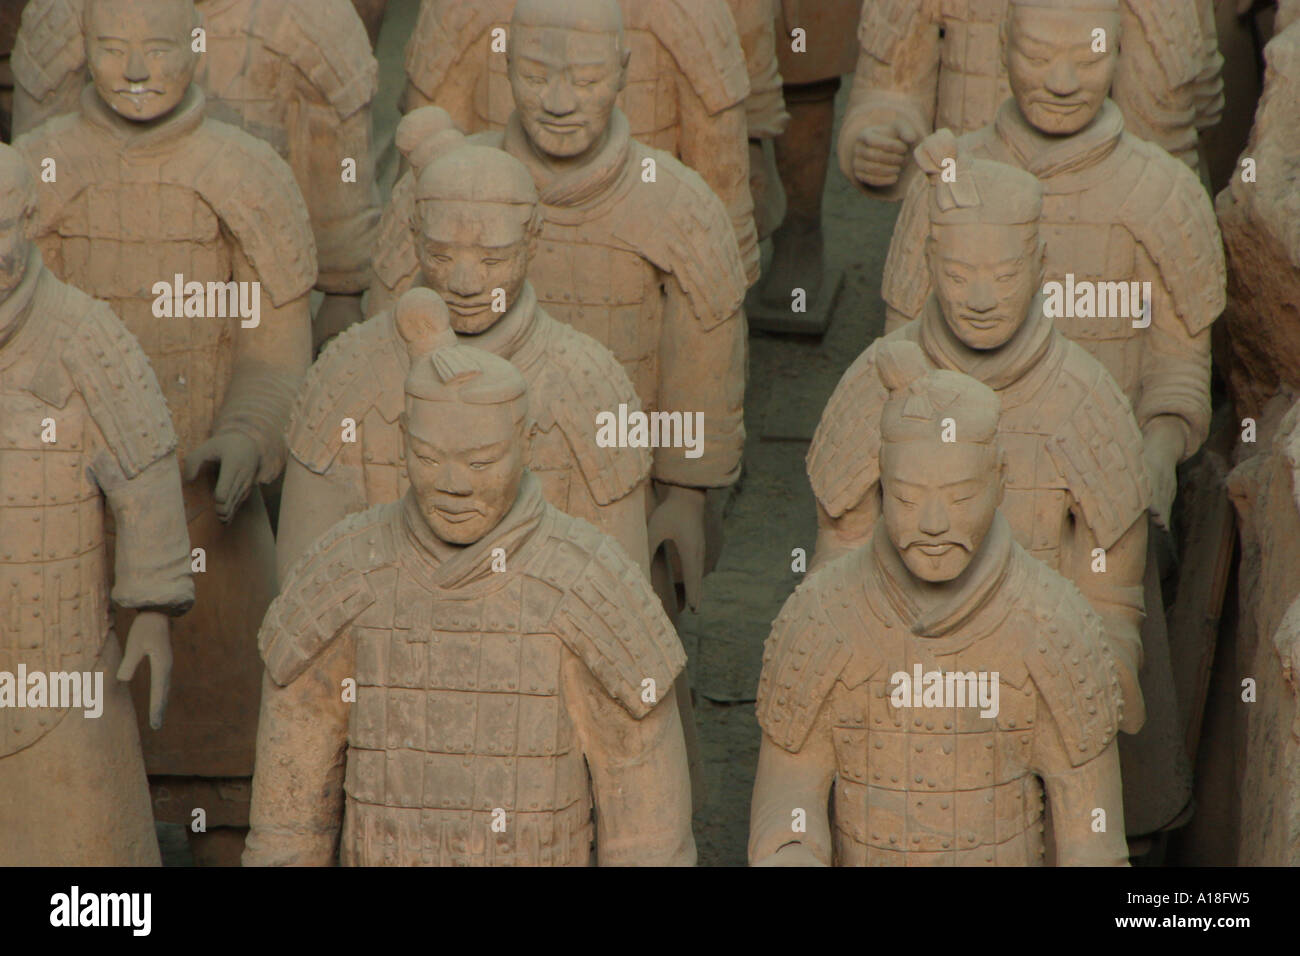 Terracotta warriors, Xian, China Stock Photo